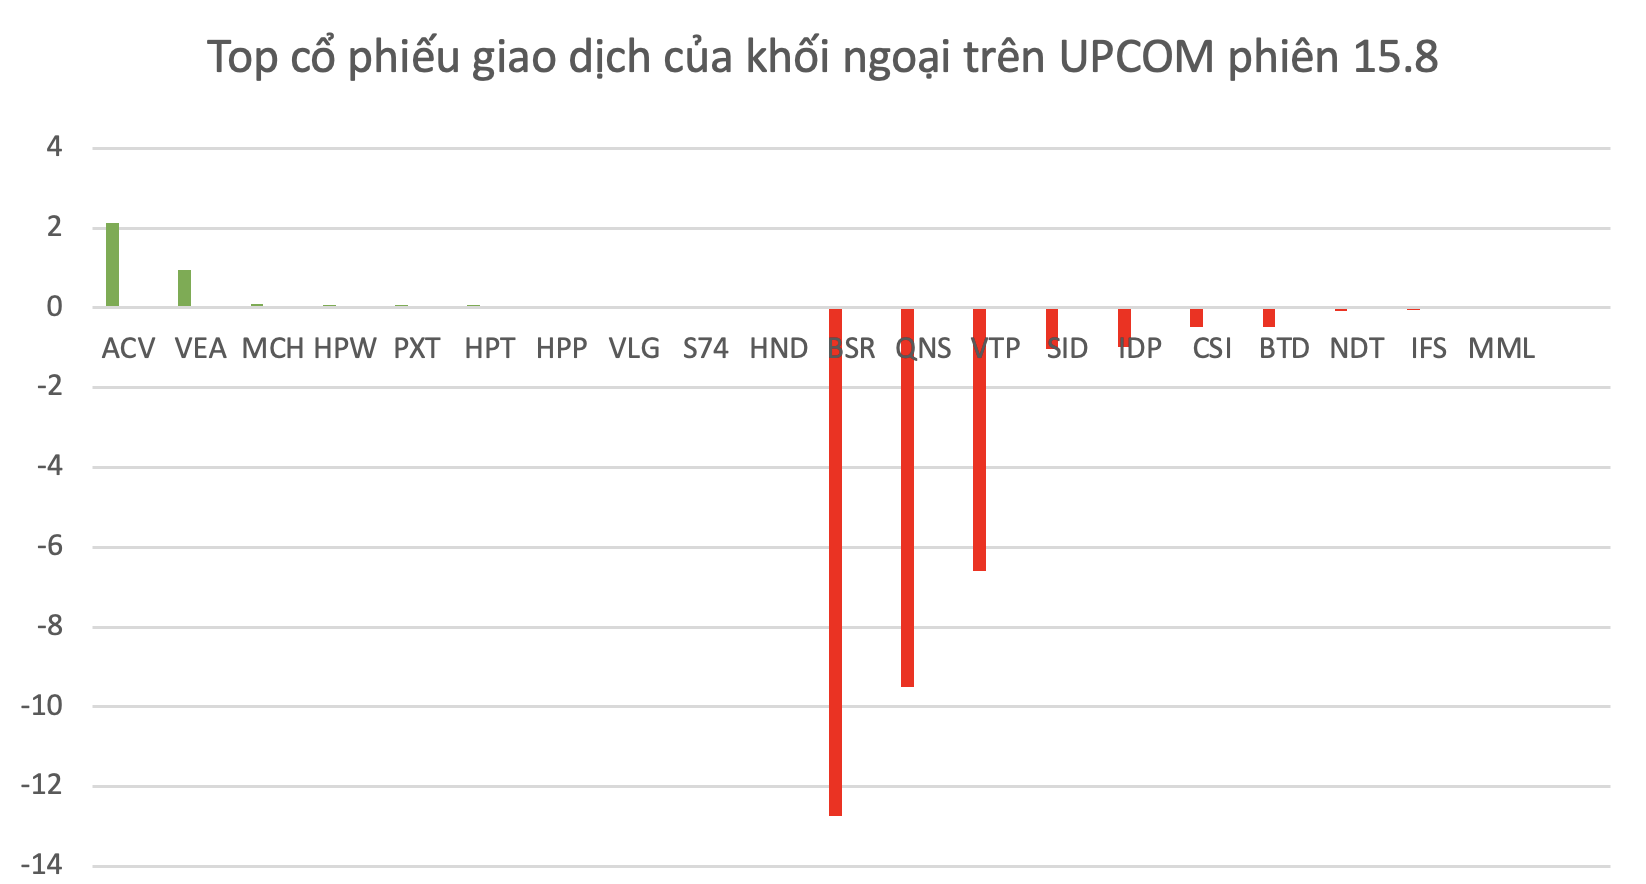 Top mã chứng khoán được khối ngoại giao dịch trên UPCOM trong phiên 15.8.